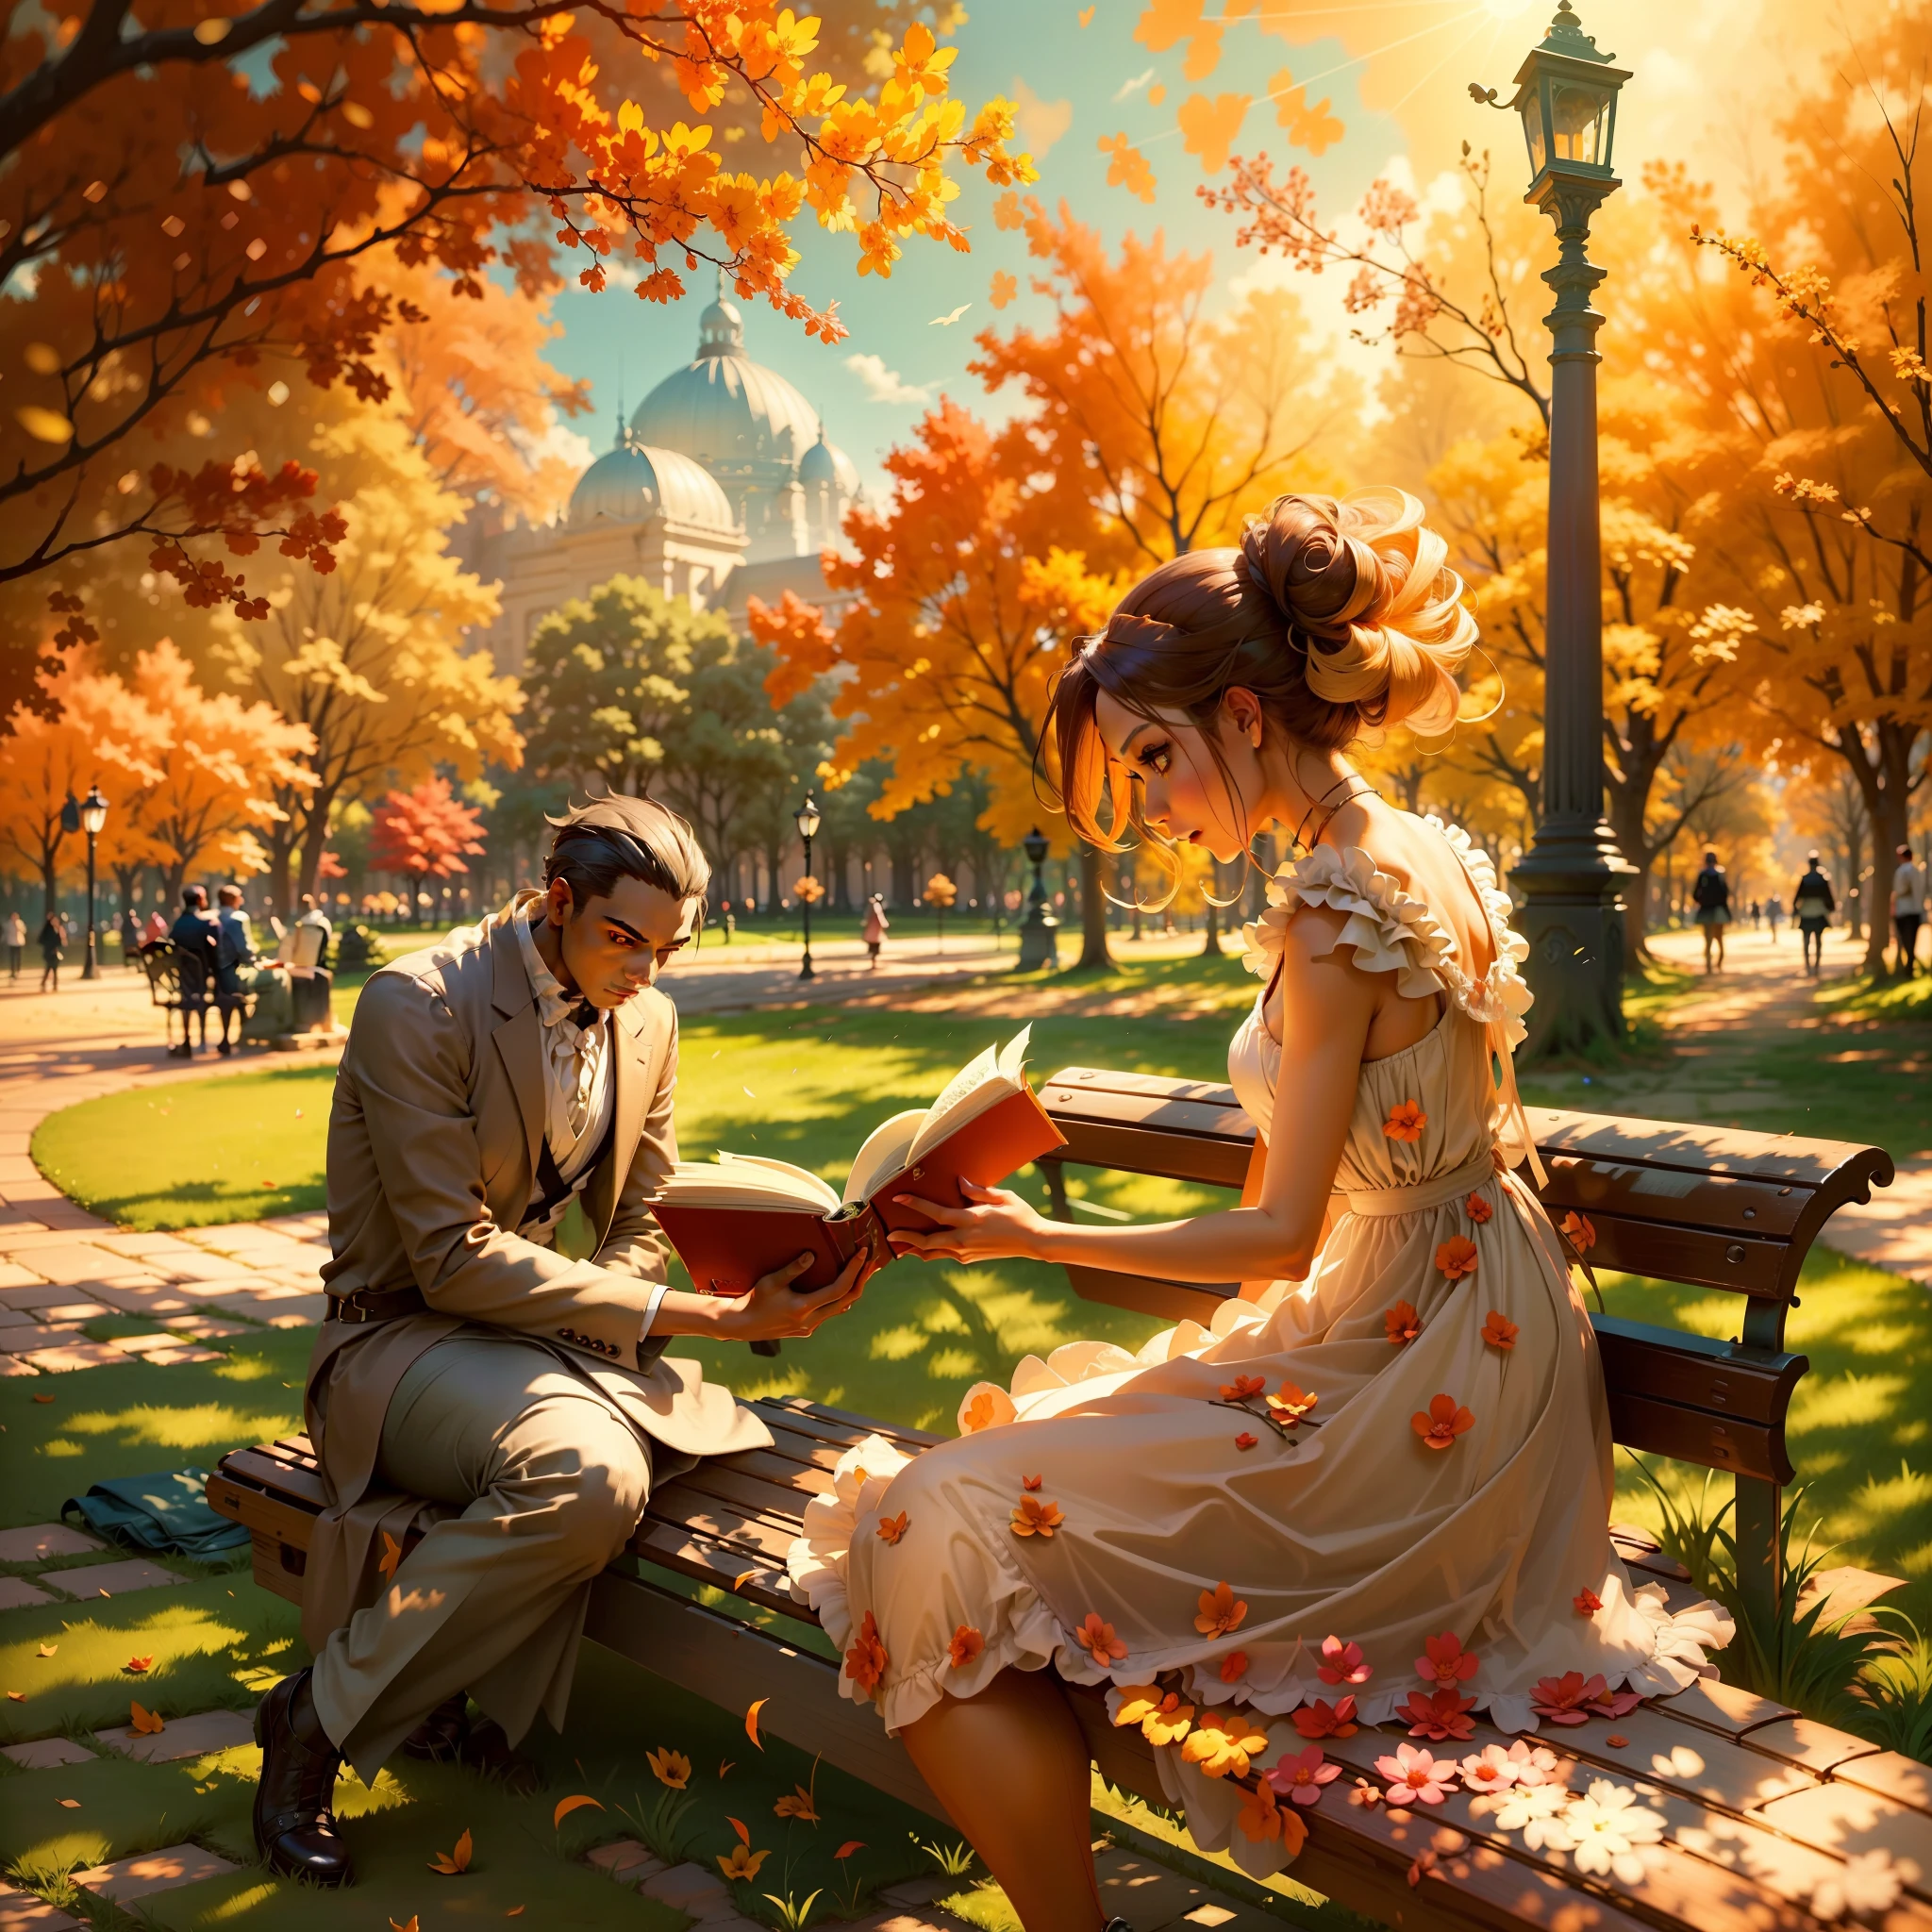 Stellen Sie sich eine Szene vor, in der eine Frau an einem sonnigen Nachmittag durch den Park spaziert. Sie trägt ein elegantes Kleid, das ihre Schönheit unterstreicht, und ihre neugierigen Augen haften an einem MANN, der auf einer Bank sitzt, völlig in ein Buch vertieft. Beschreiben Sie die lebendige Atmosphäre, die durch die Sonnenstrahlen im Hintergrund entsteht.